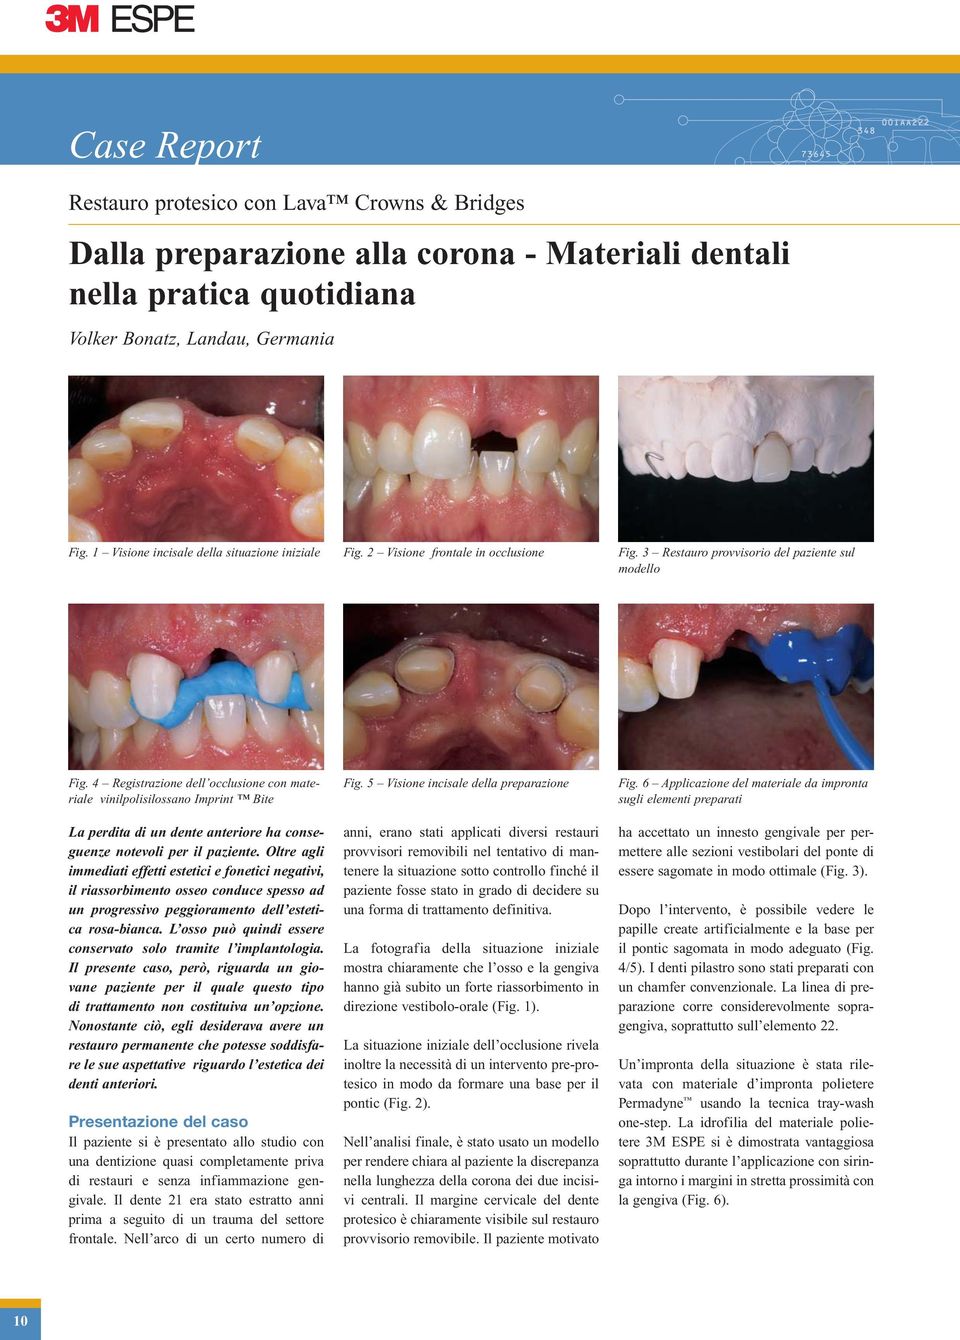 4 Registrazione dell occlusione con materiale vinilpolisilossano Imprint Bite La perdita di un dente anteriore ha conseguenze notevoli per il paziente.